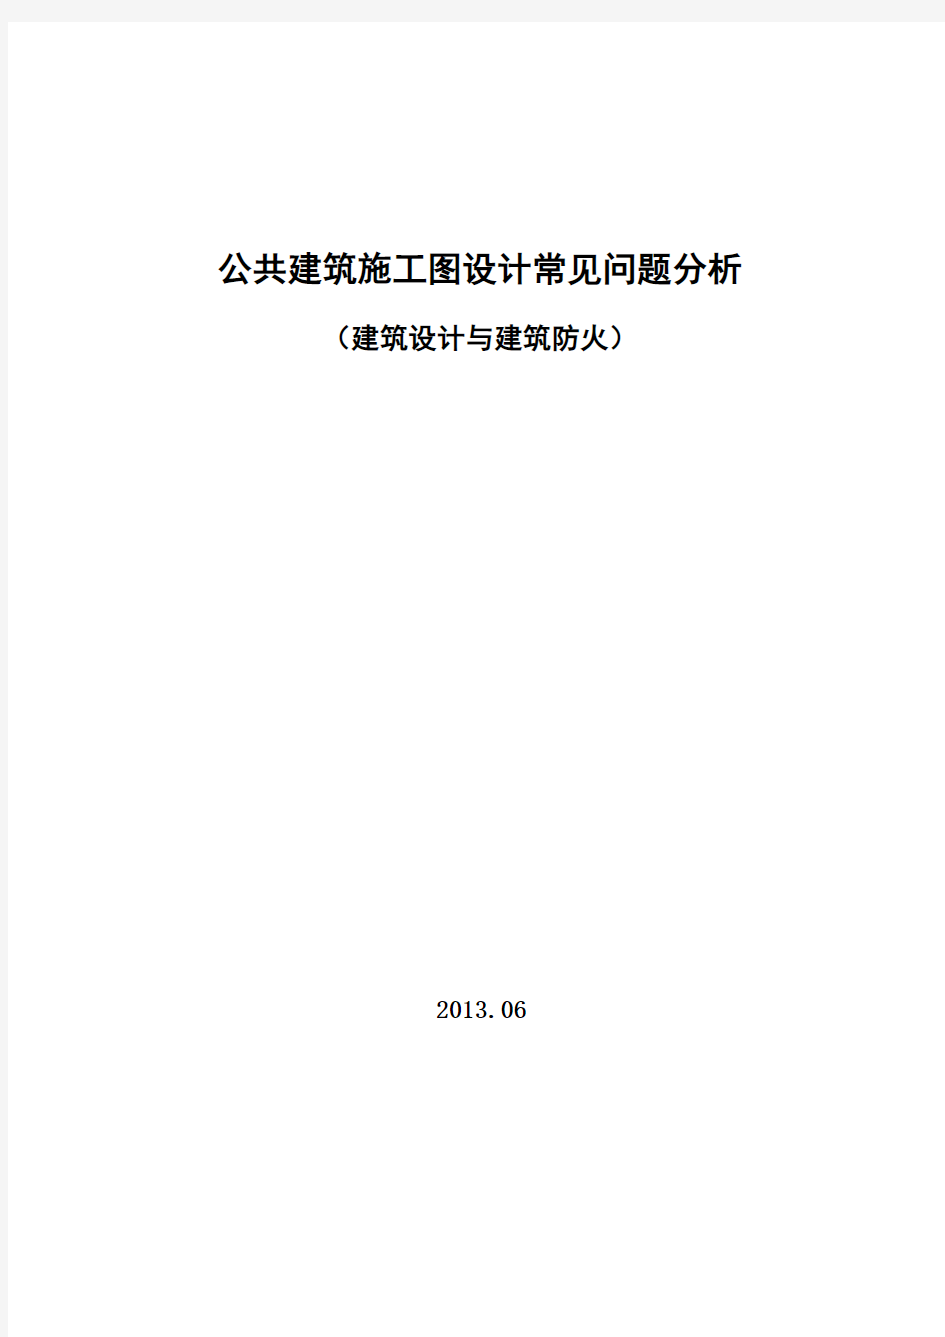 2014年江苏省建设施工图审查中常见问题分析